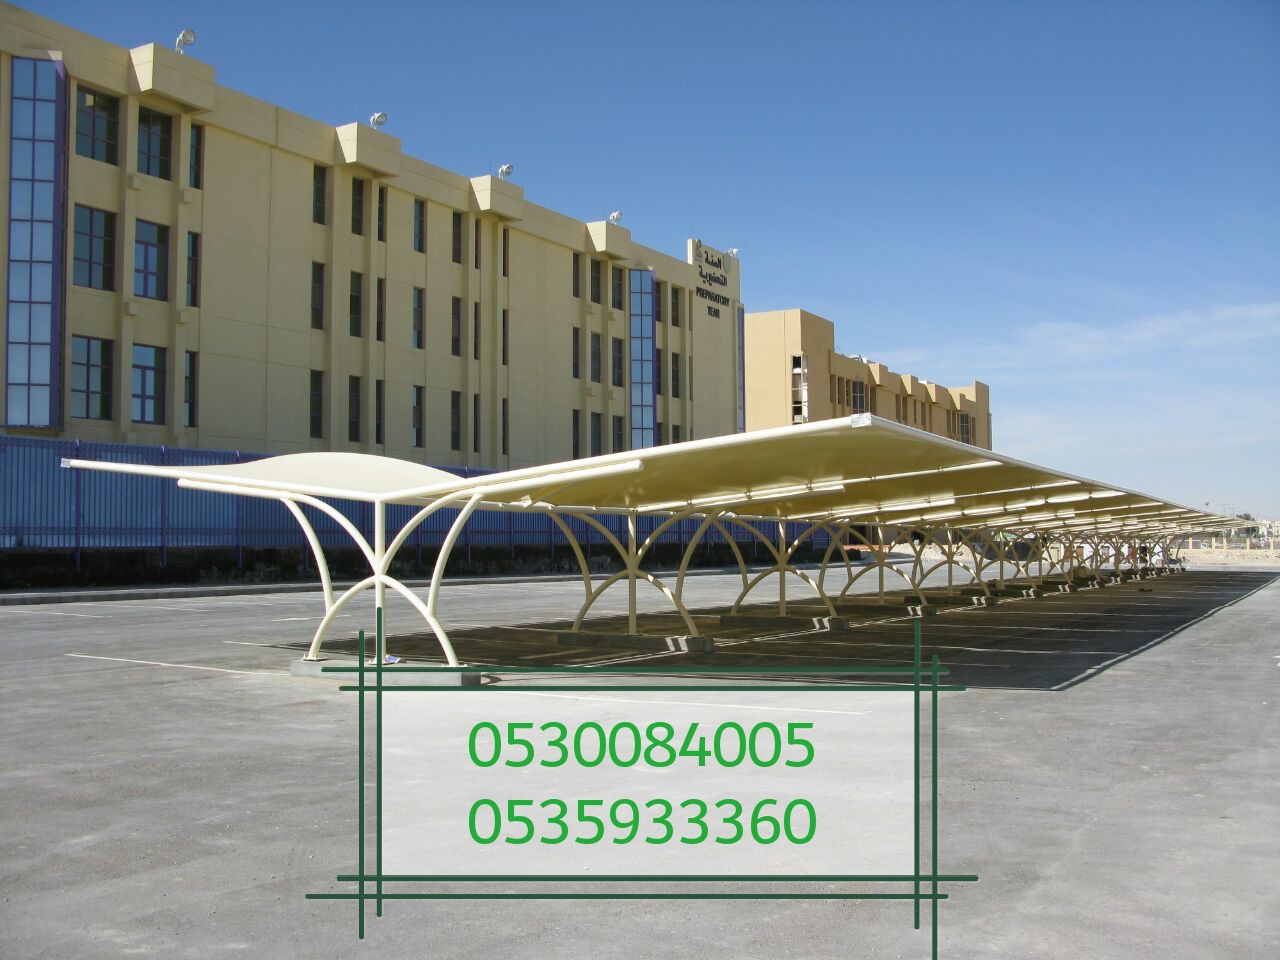 مؤسسة رواق المستقبل لبيع الحواجز الخرسانية والمصدات في الرياض 0530084005  P_1502vb9pk3